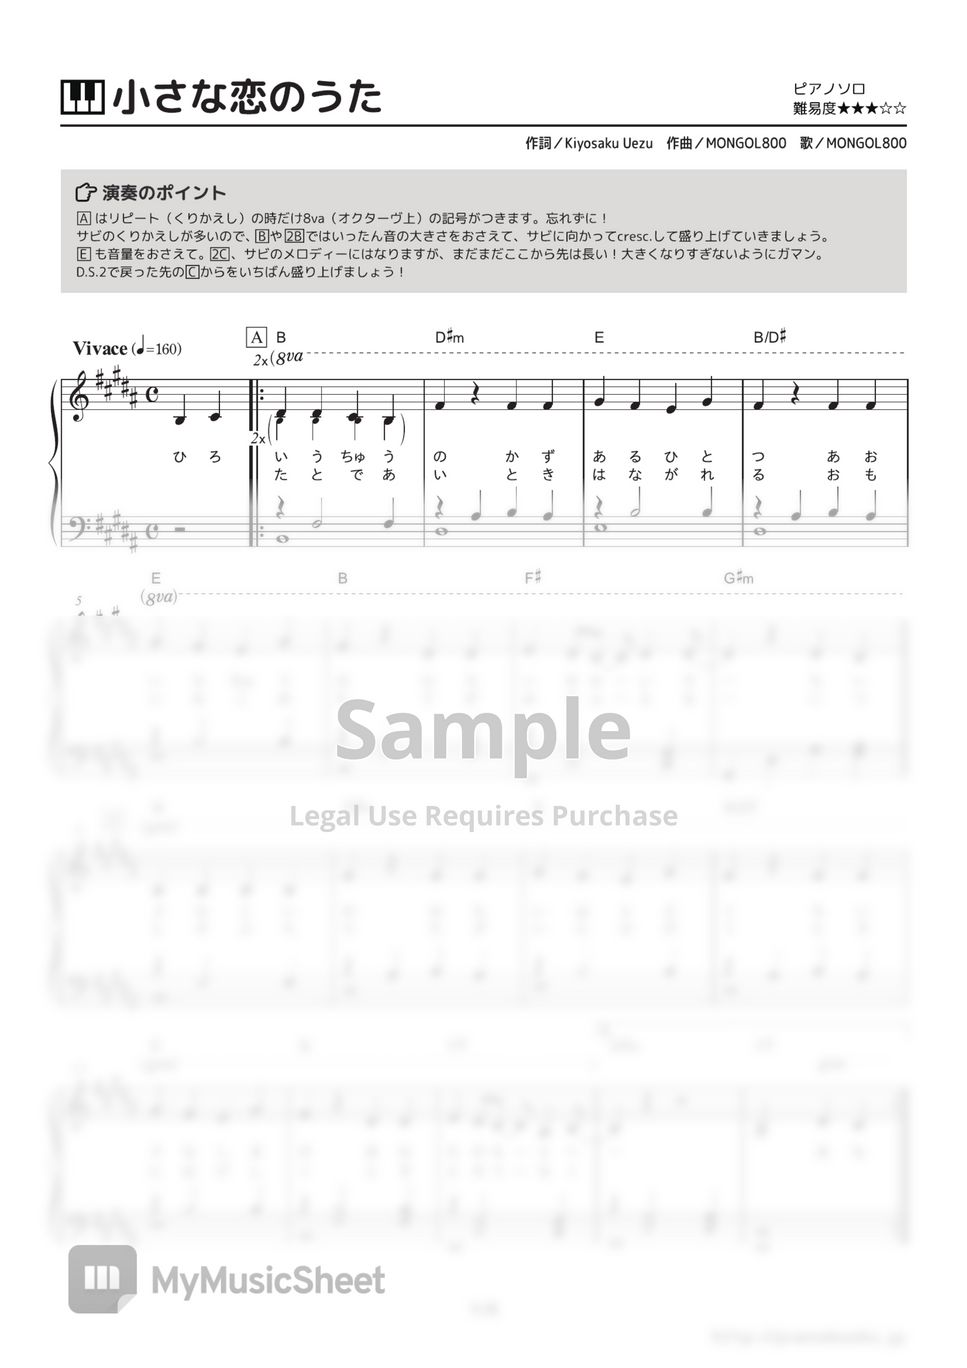 MONGOL800 - Chisana Koi no Uta by PianoBooks